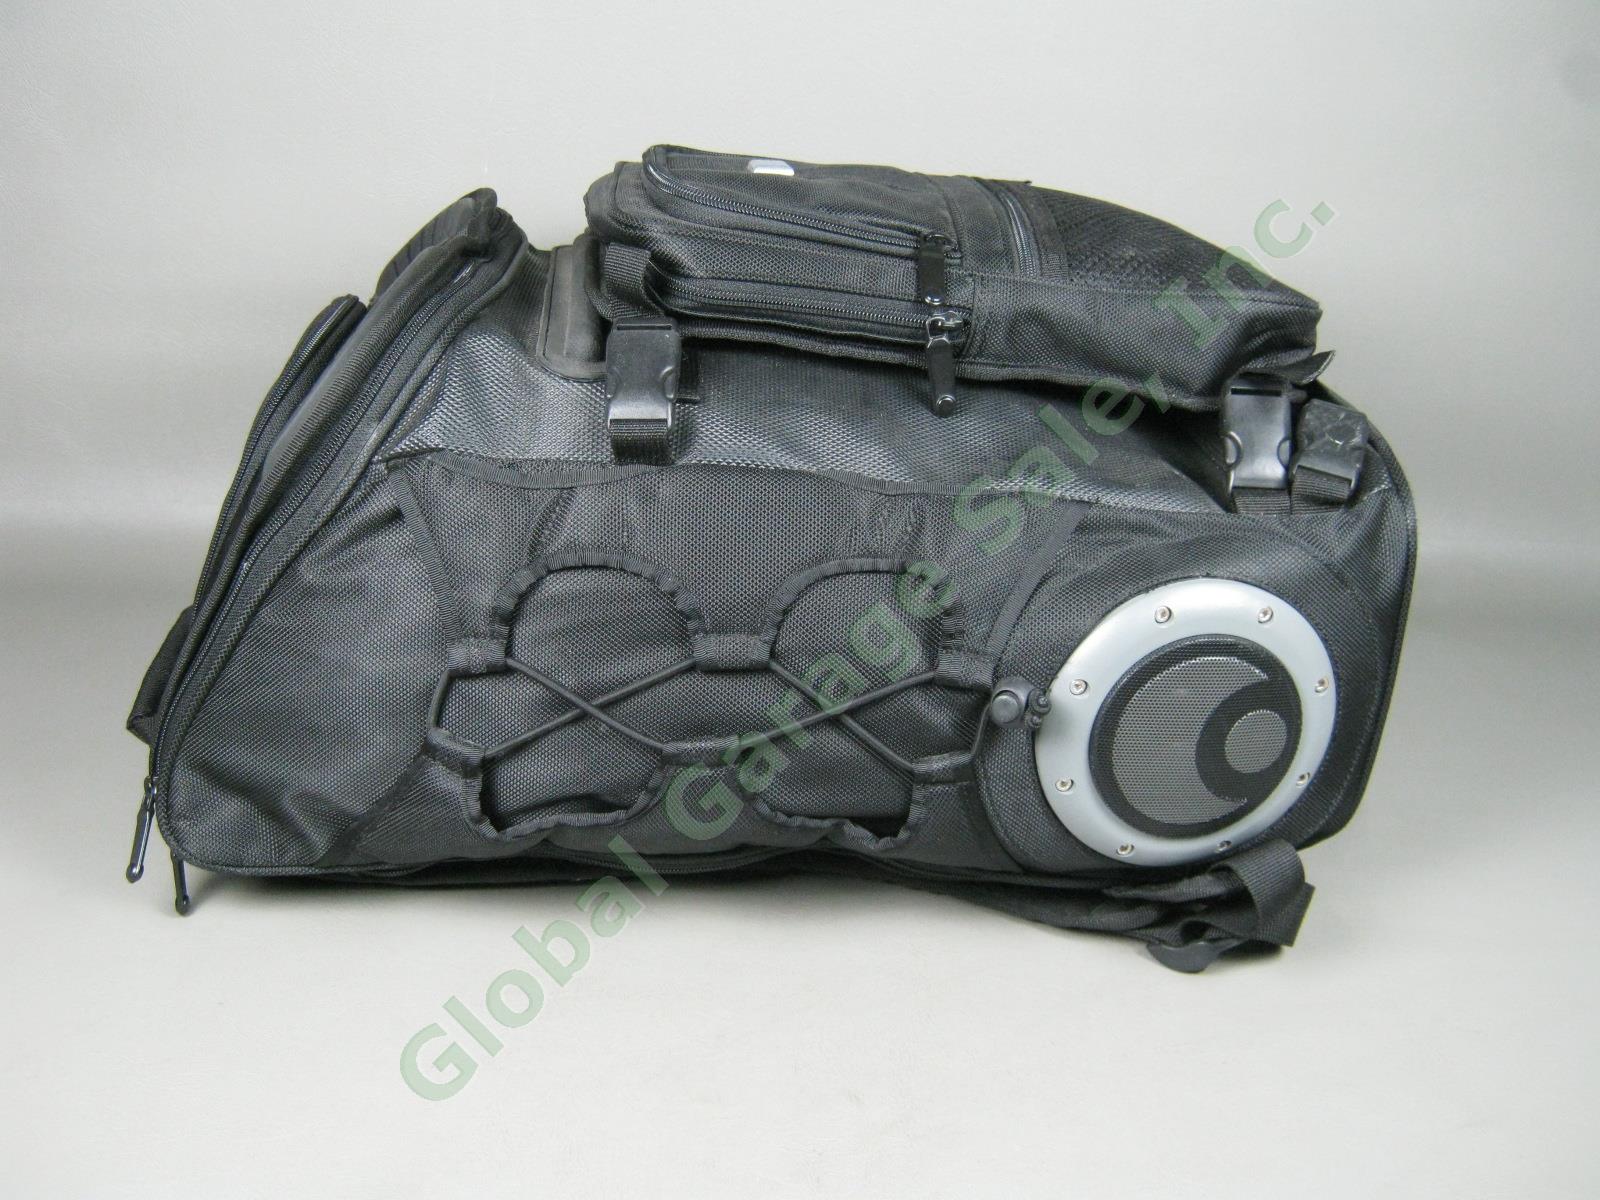 NOS Osiris G-Bag Metatron 2100 Backpack Skate Pack w/ Stereo Speakers + Amp NR! 4